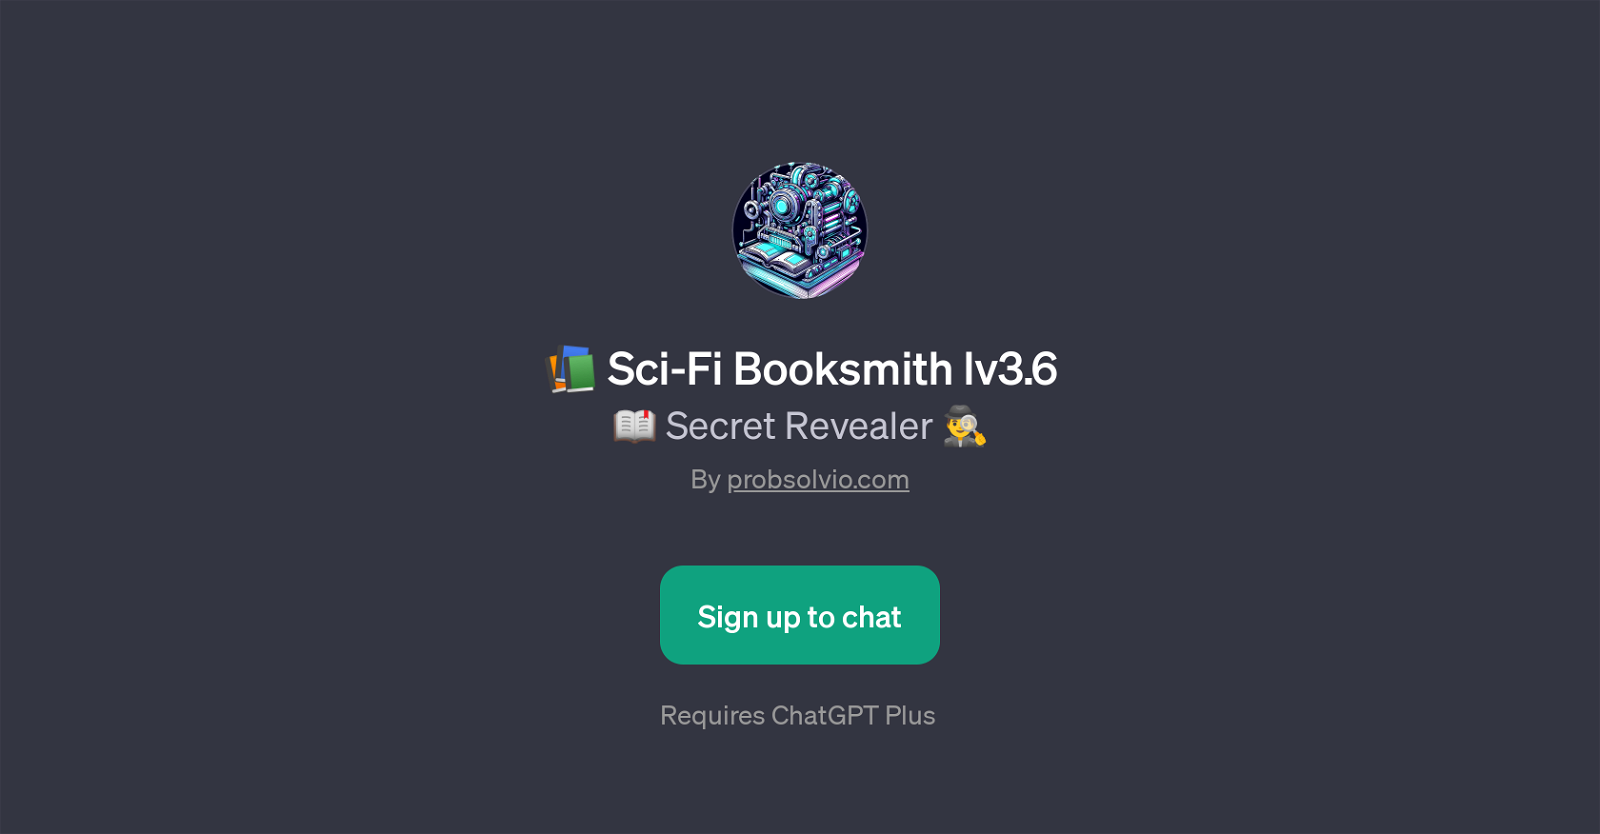 Sci-Fi Booksmith lv3.6 website